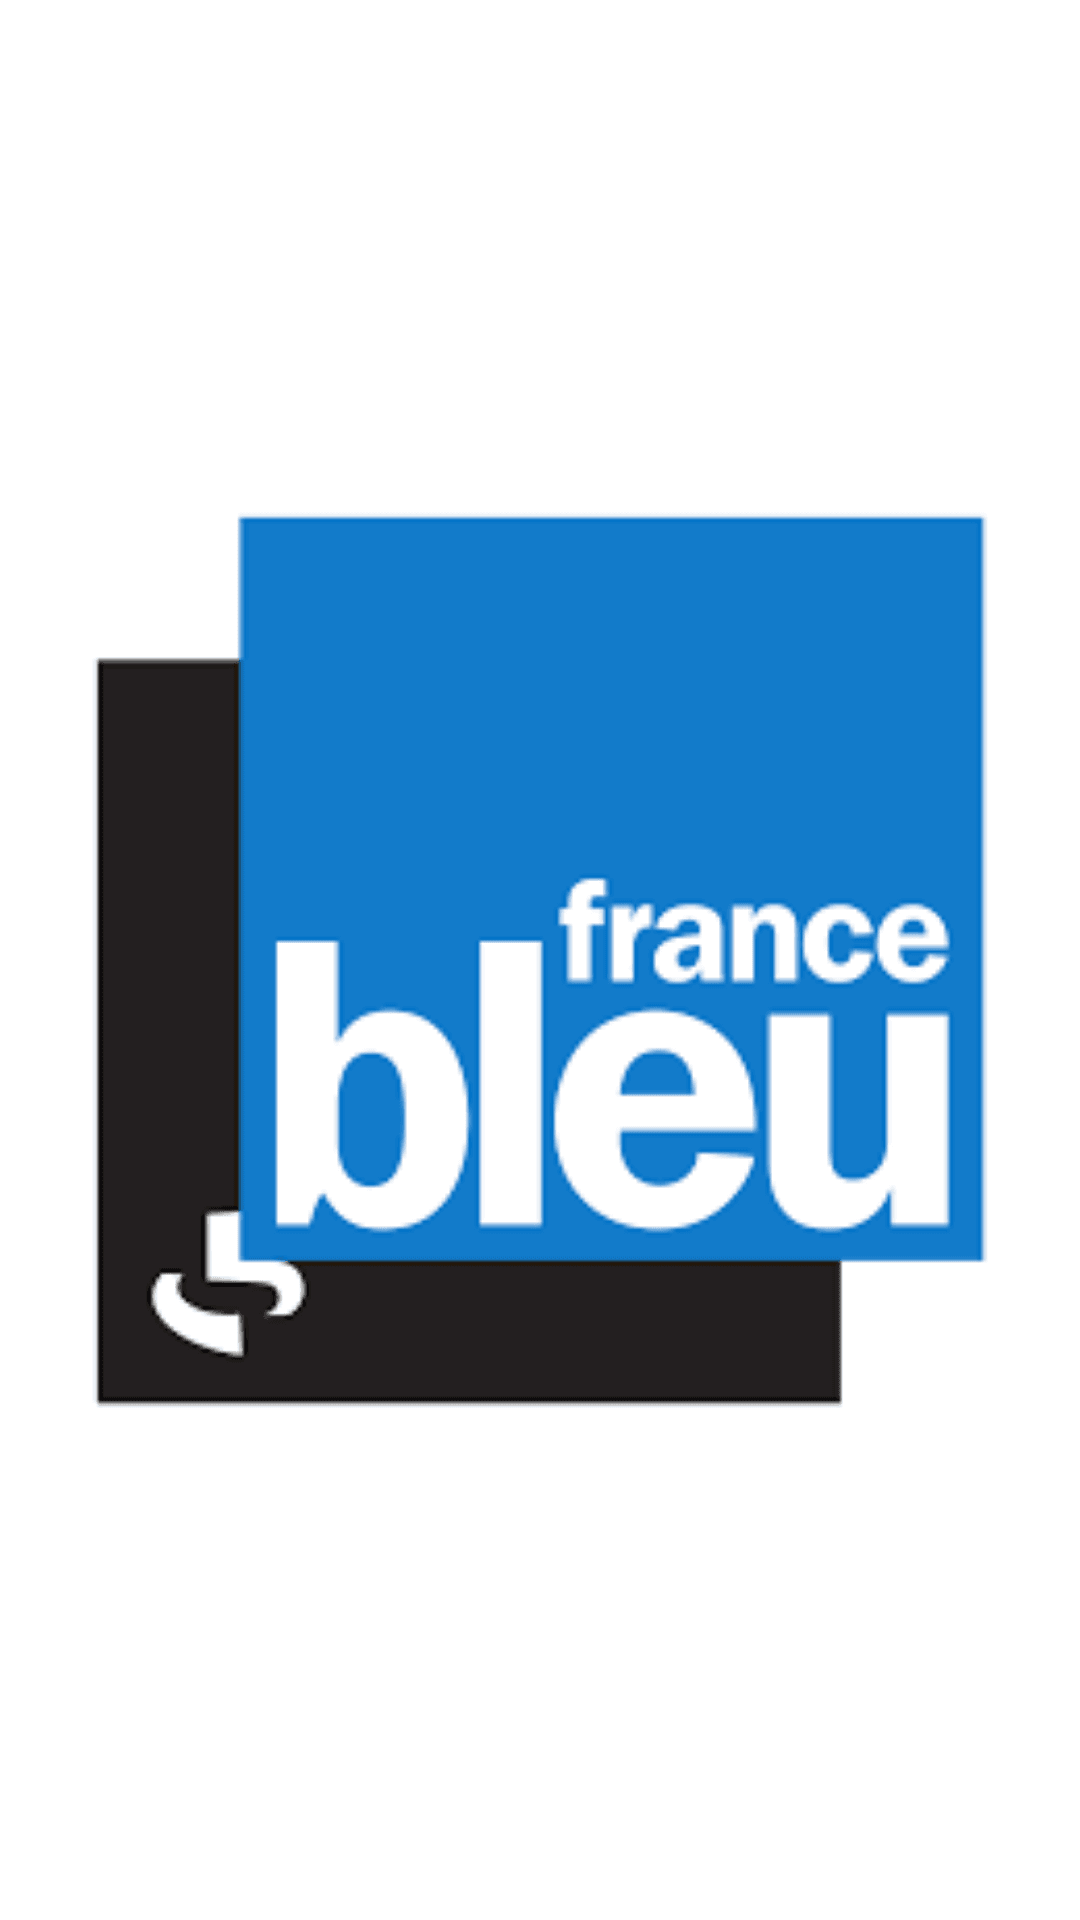 https://www.francebleu.fr/emissions/cote-saveurs-au-pays-basque/pays-basque/le-brunch-du-st-julien-a-biarritz?xtmc=hotel%20saint-julien&xtnp=1&xtcr=2